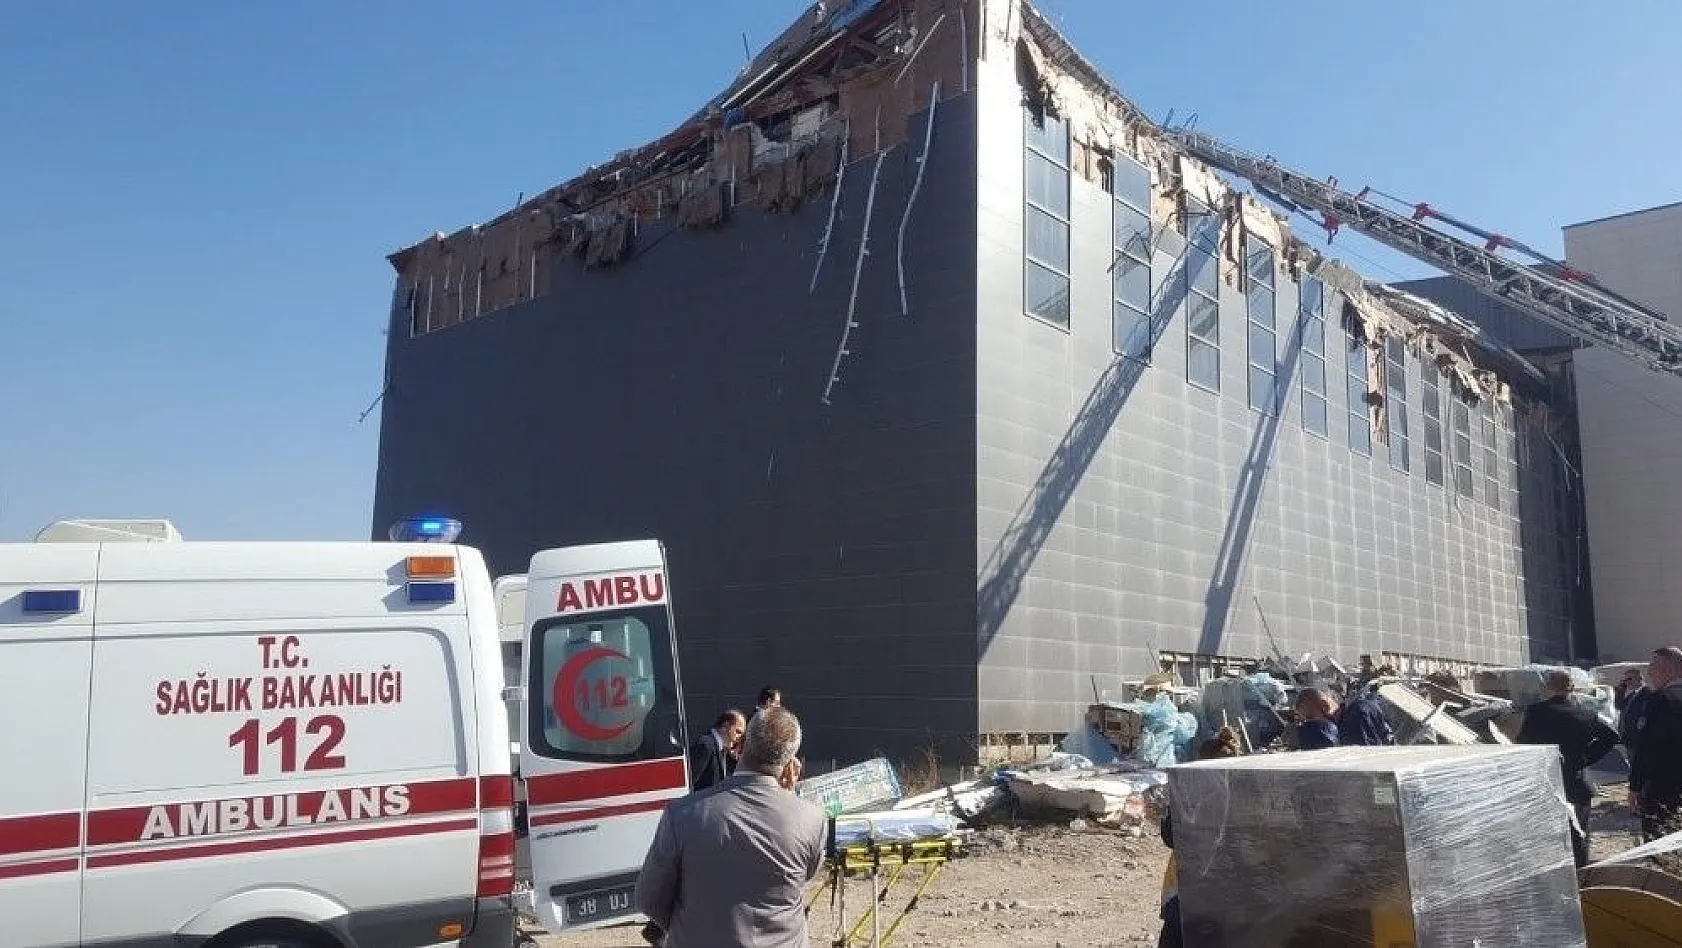 Kayseri'deki çatı çökmesinde ekipler yaralı işçiyi kurtarma çalışmalarını sürdürüyor
